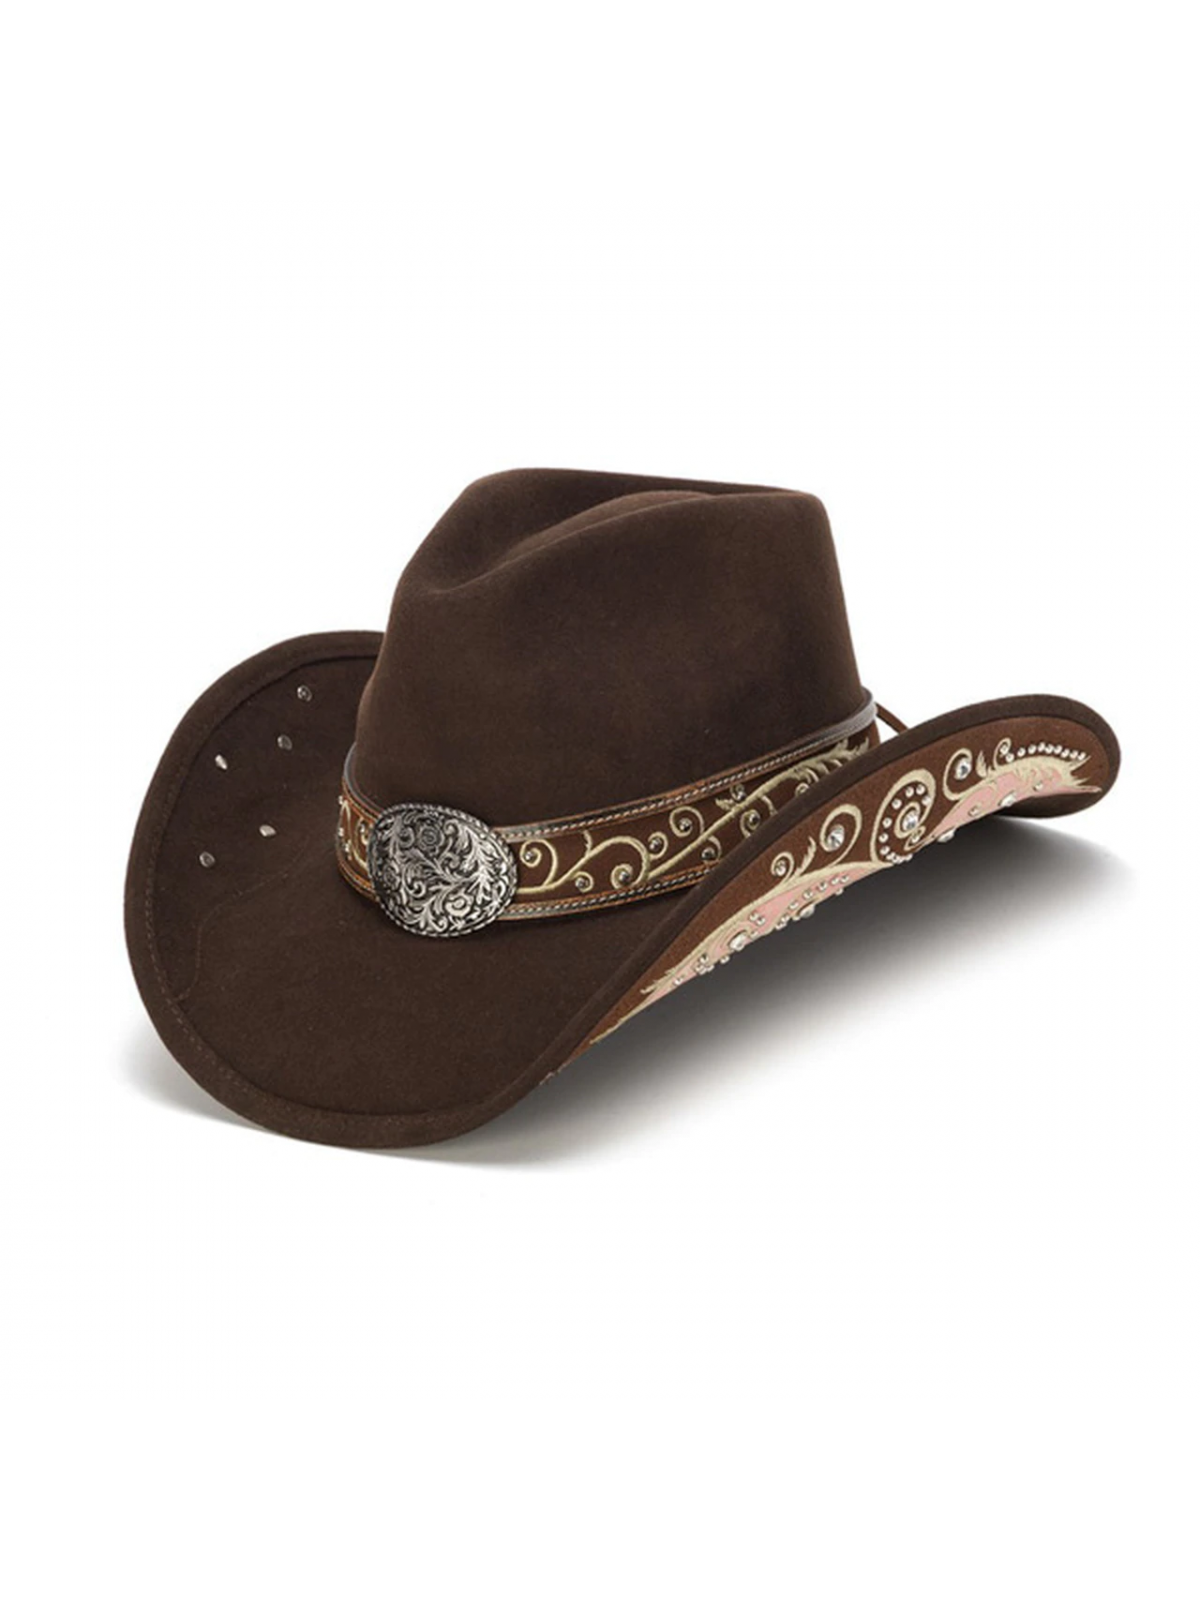 Stampede Hat - Fashion western cowboy hat 1870